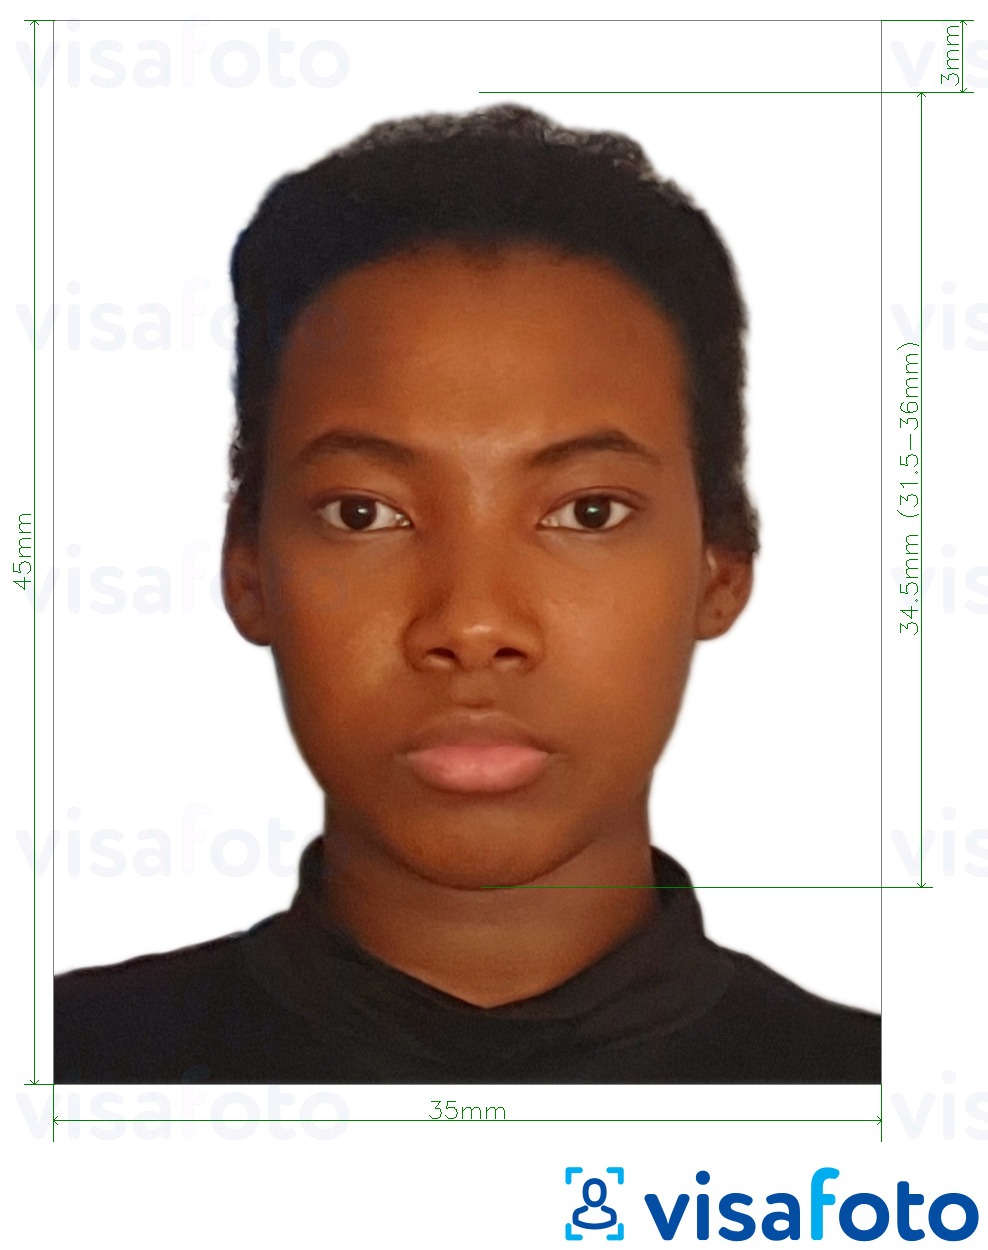 Exemplo de foto para Passaporte da Libéria 35x45 mm (3.5x4.5 cm) com especificação exata de dimensão